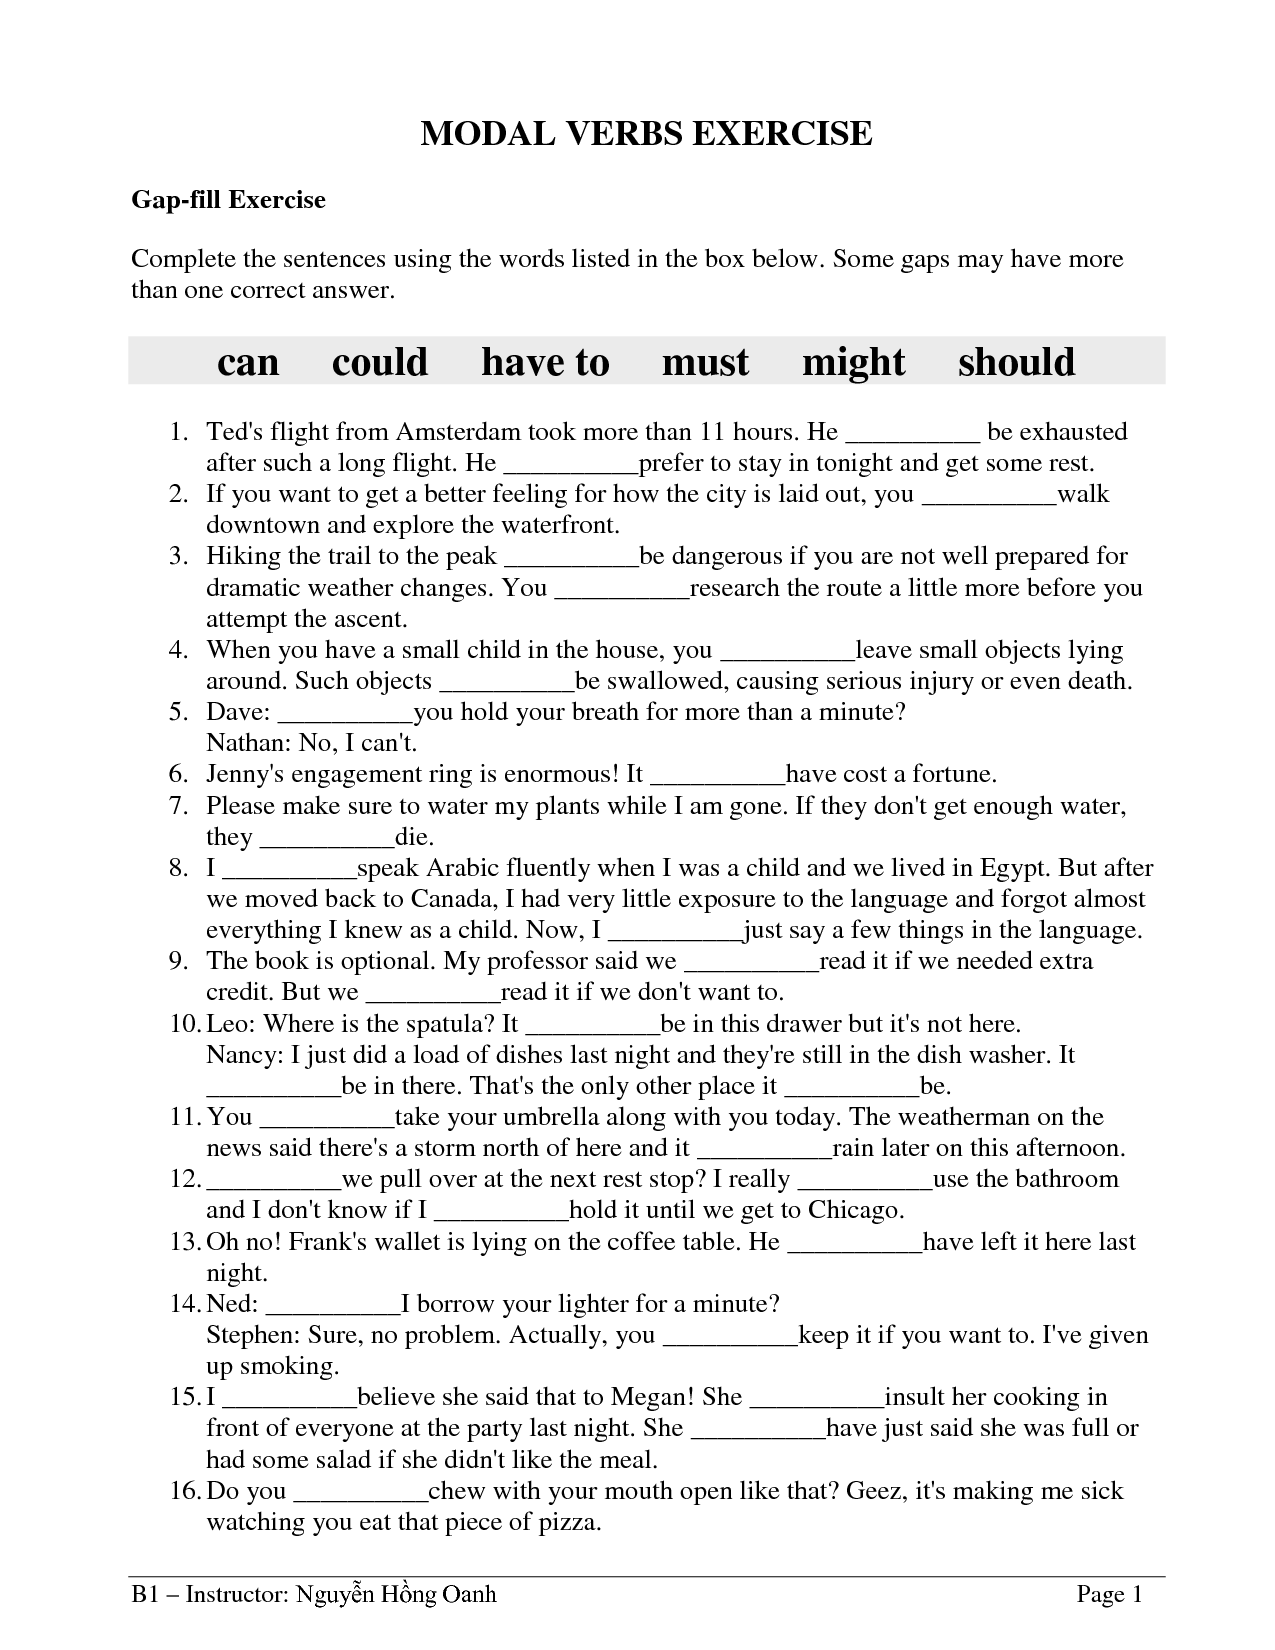 10-modal-verbs-ks2-worksheet-printable-worksheets-949